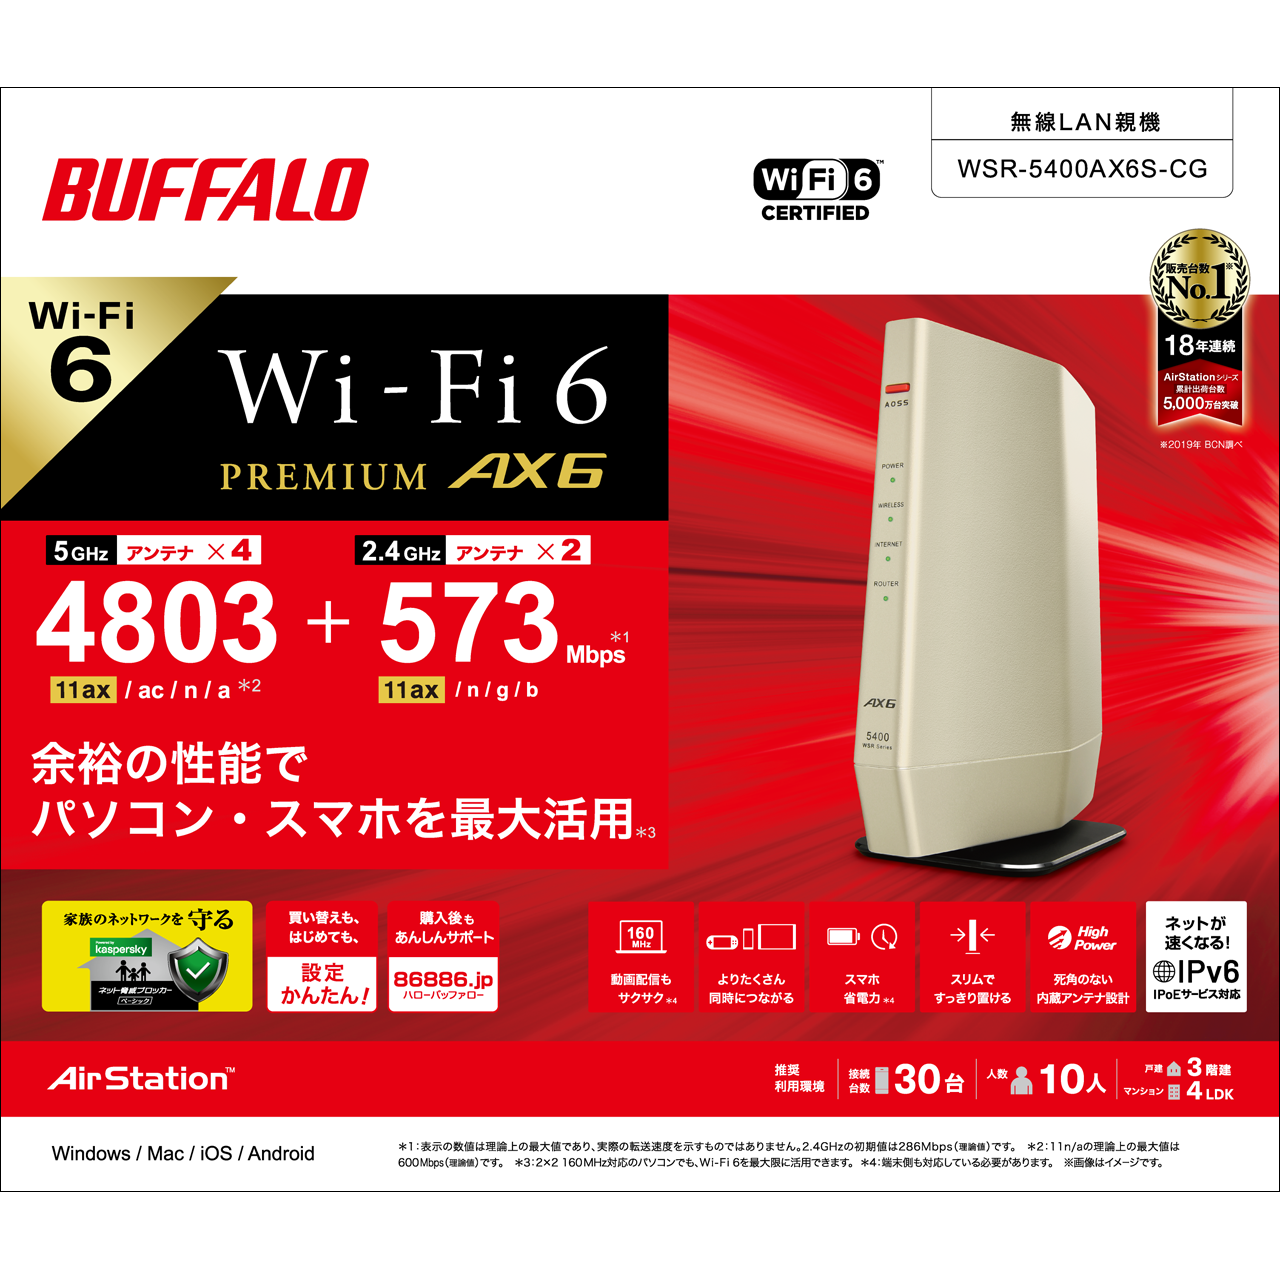 BUFFALO バッファロー 無線LANルーター プレミアムモデル (Wi-Fi 6(11ax)対応 ワイドバンド 5GHz 160MHz対応 